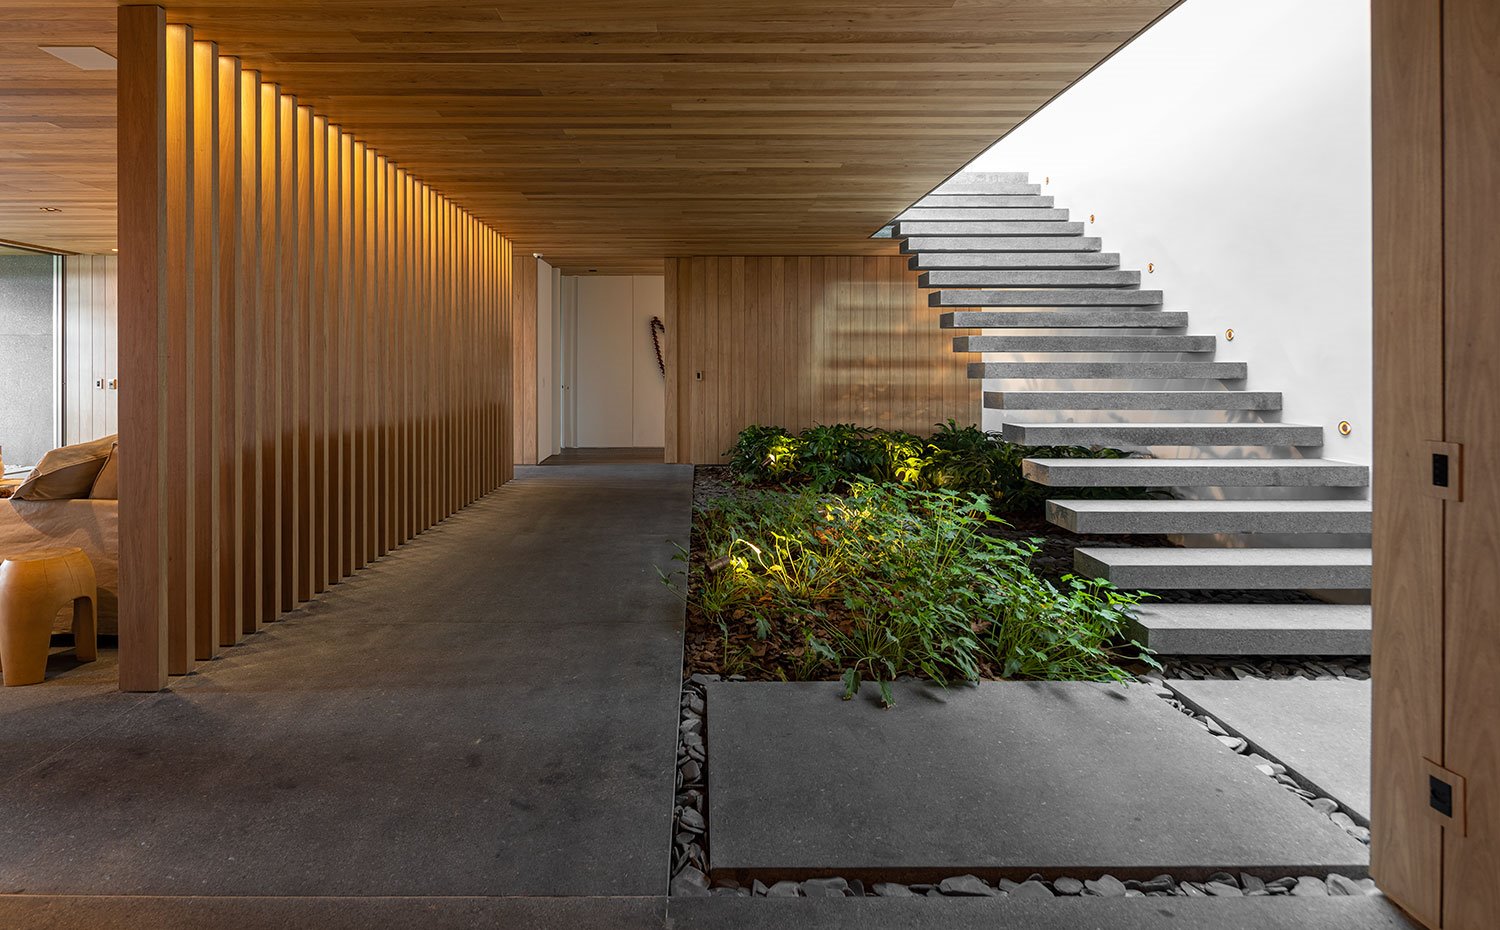 Zona de paso con jardín interior bajo escaleras en voladizo con revestimiento en madera